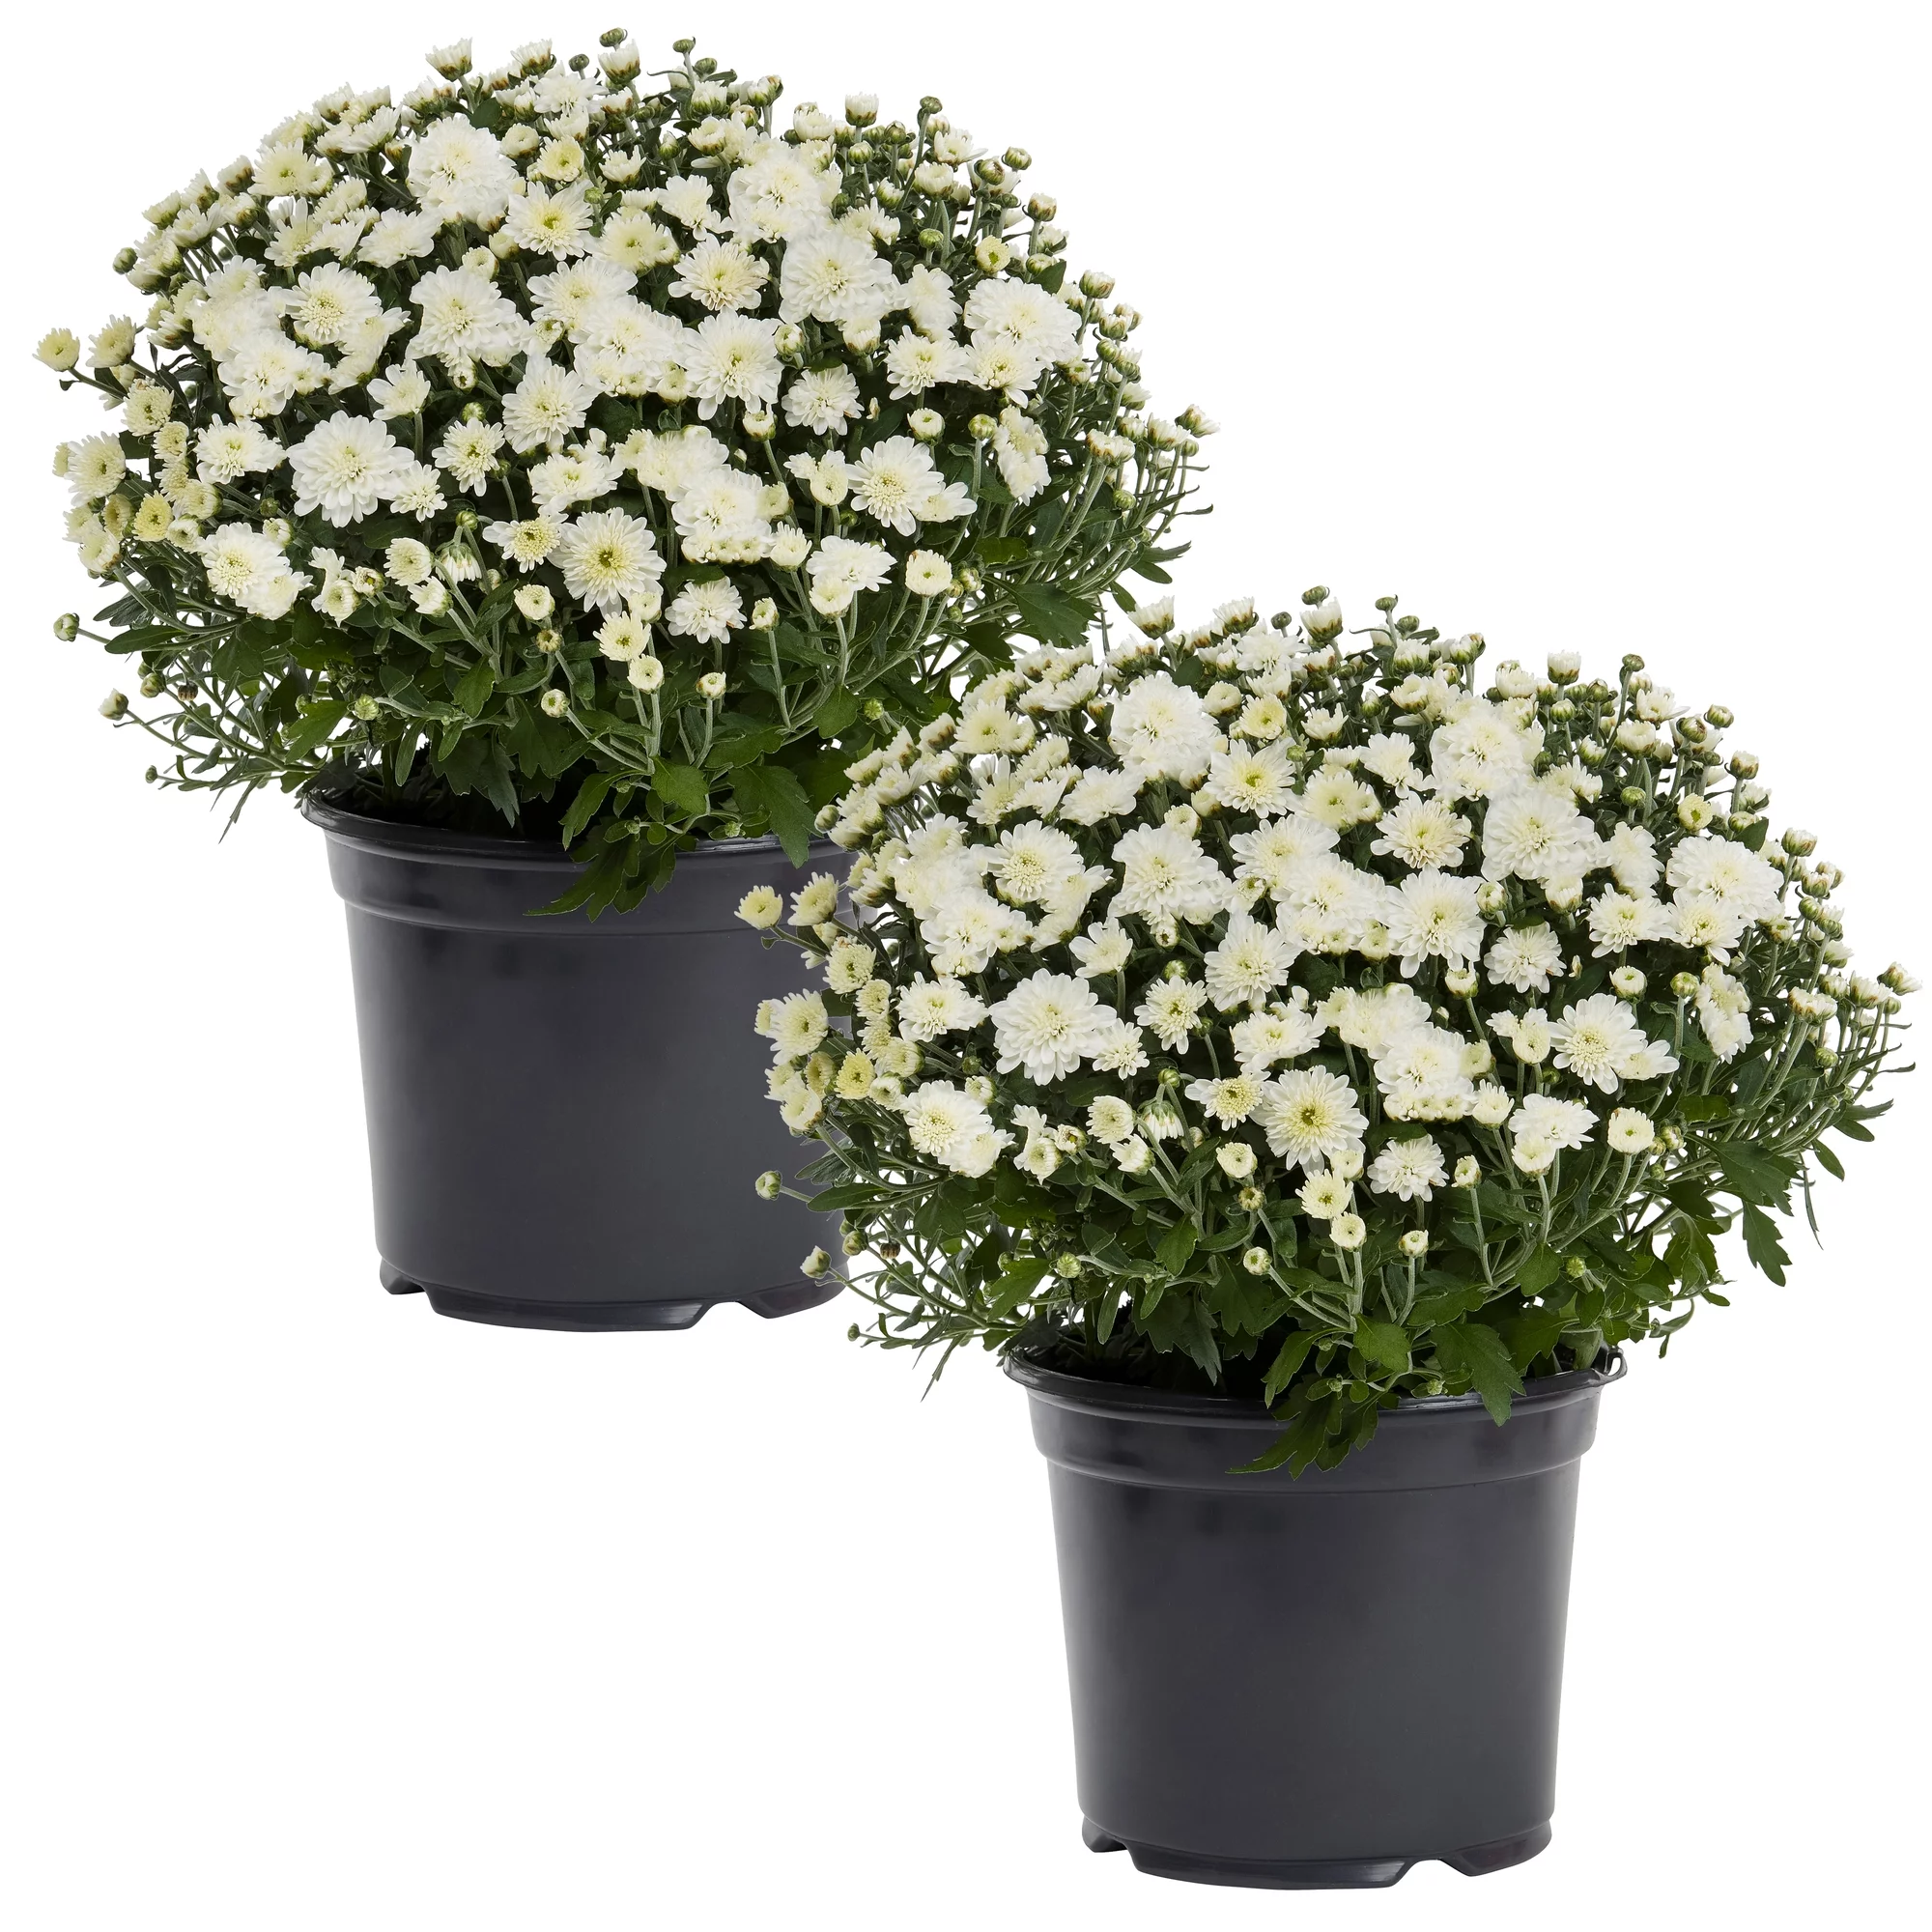 Expert Gardener 3QT White Mum Full Sun Live Plants (2-Pack) with Grower Pots